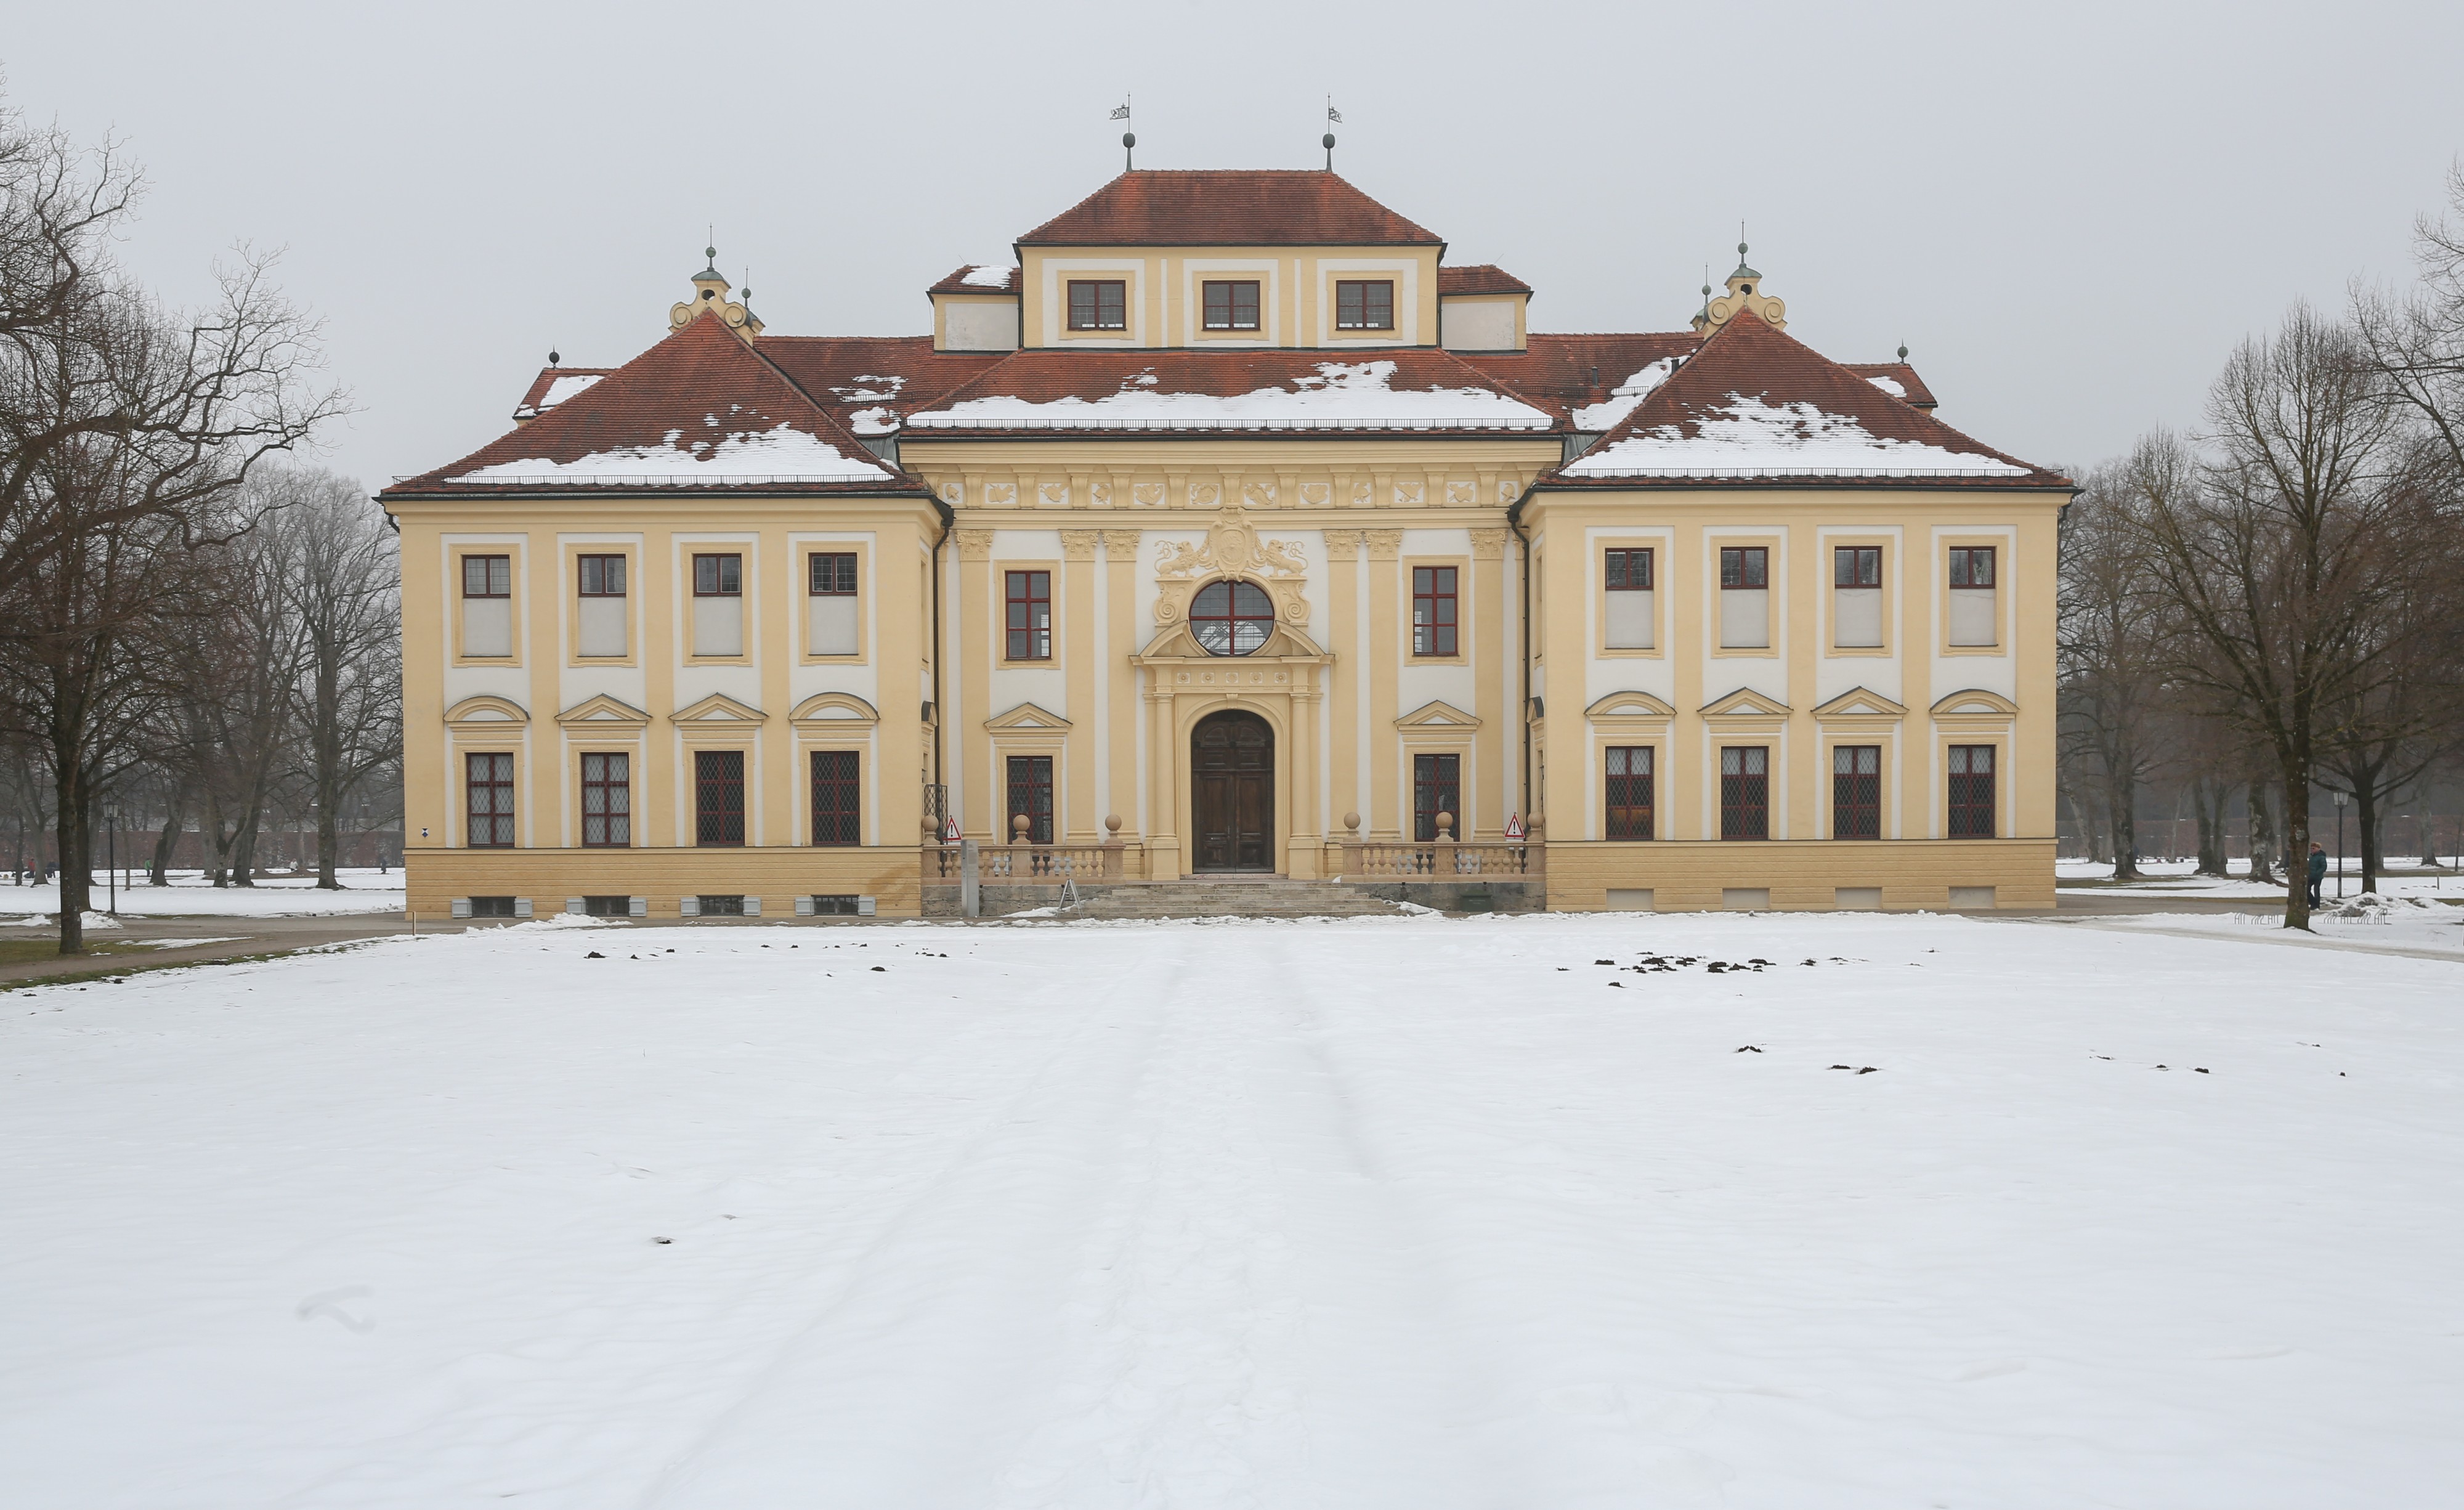 Nuevo Palacio Schleissheim, Oberschleissheim, Alemania, 2015-02-15, DD 03